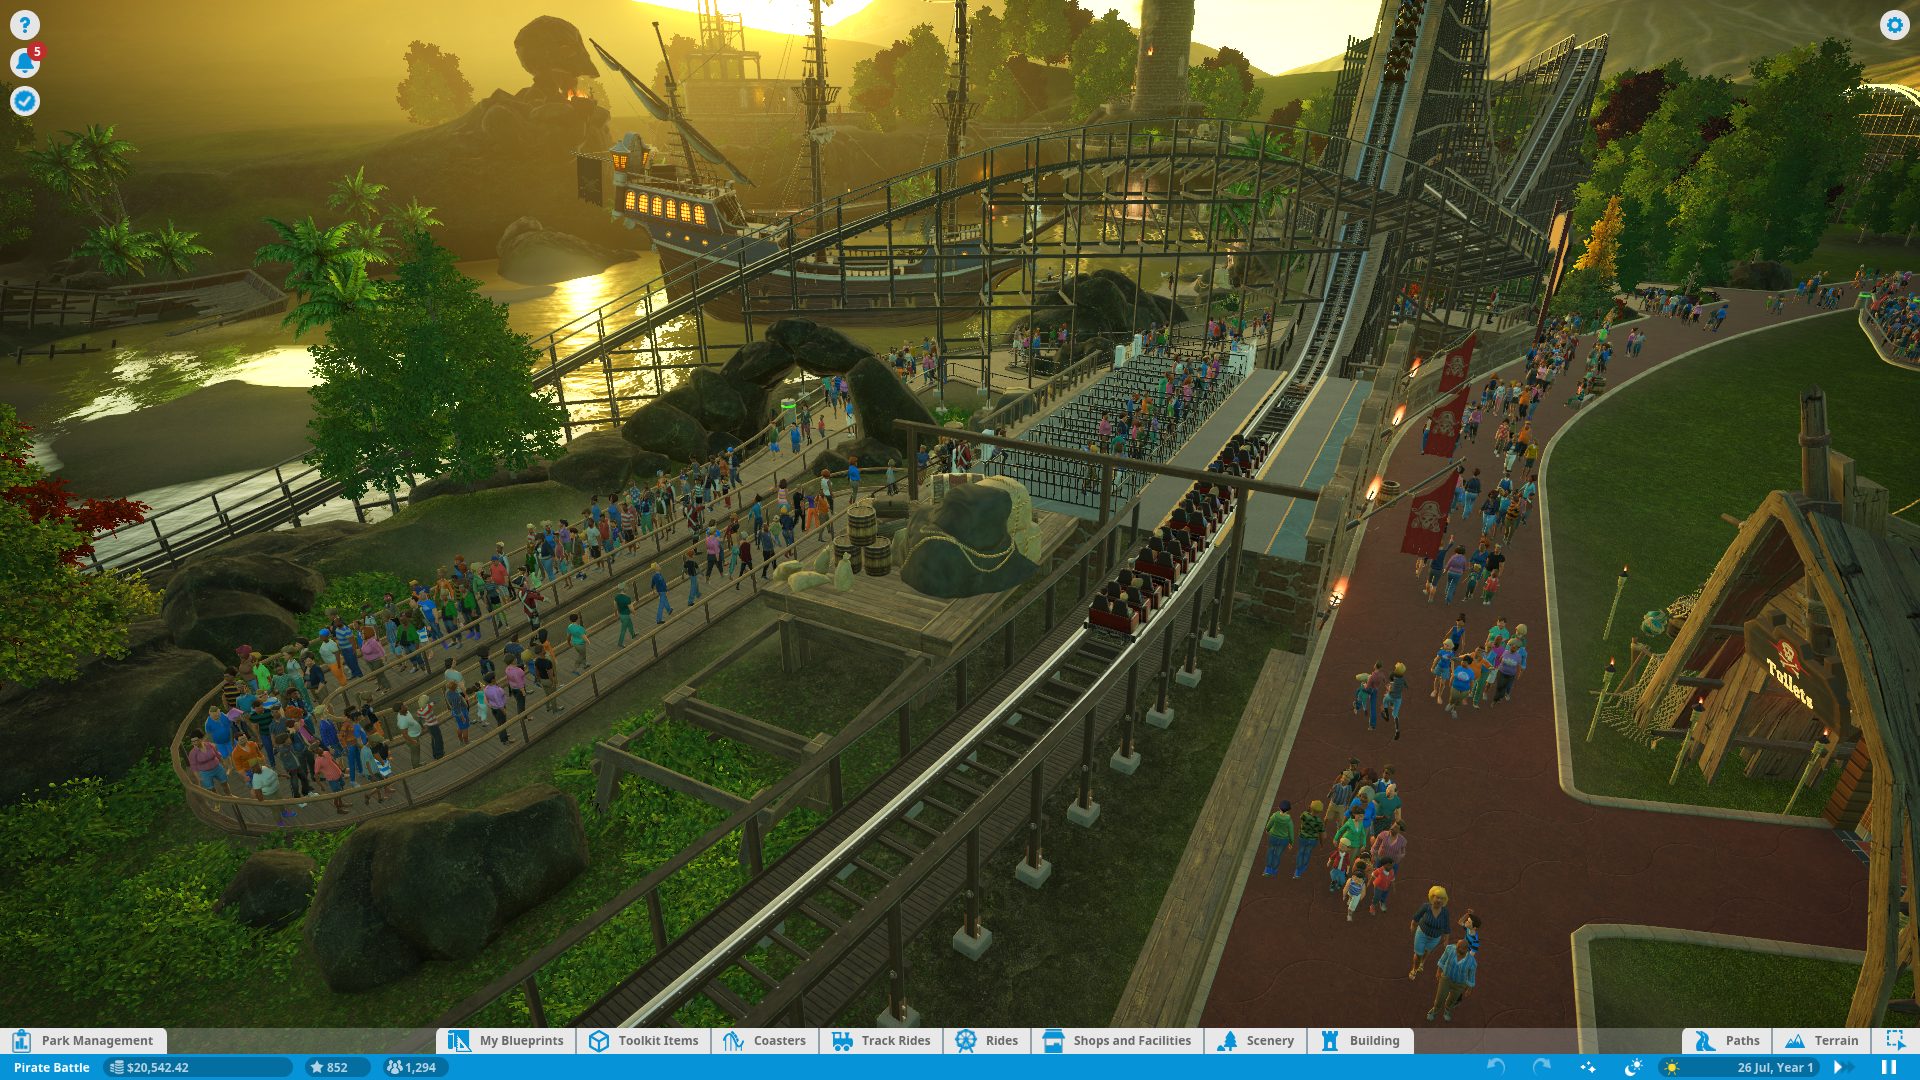 3d Roller Coaster Games Online